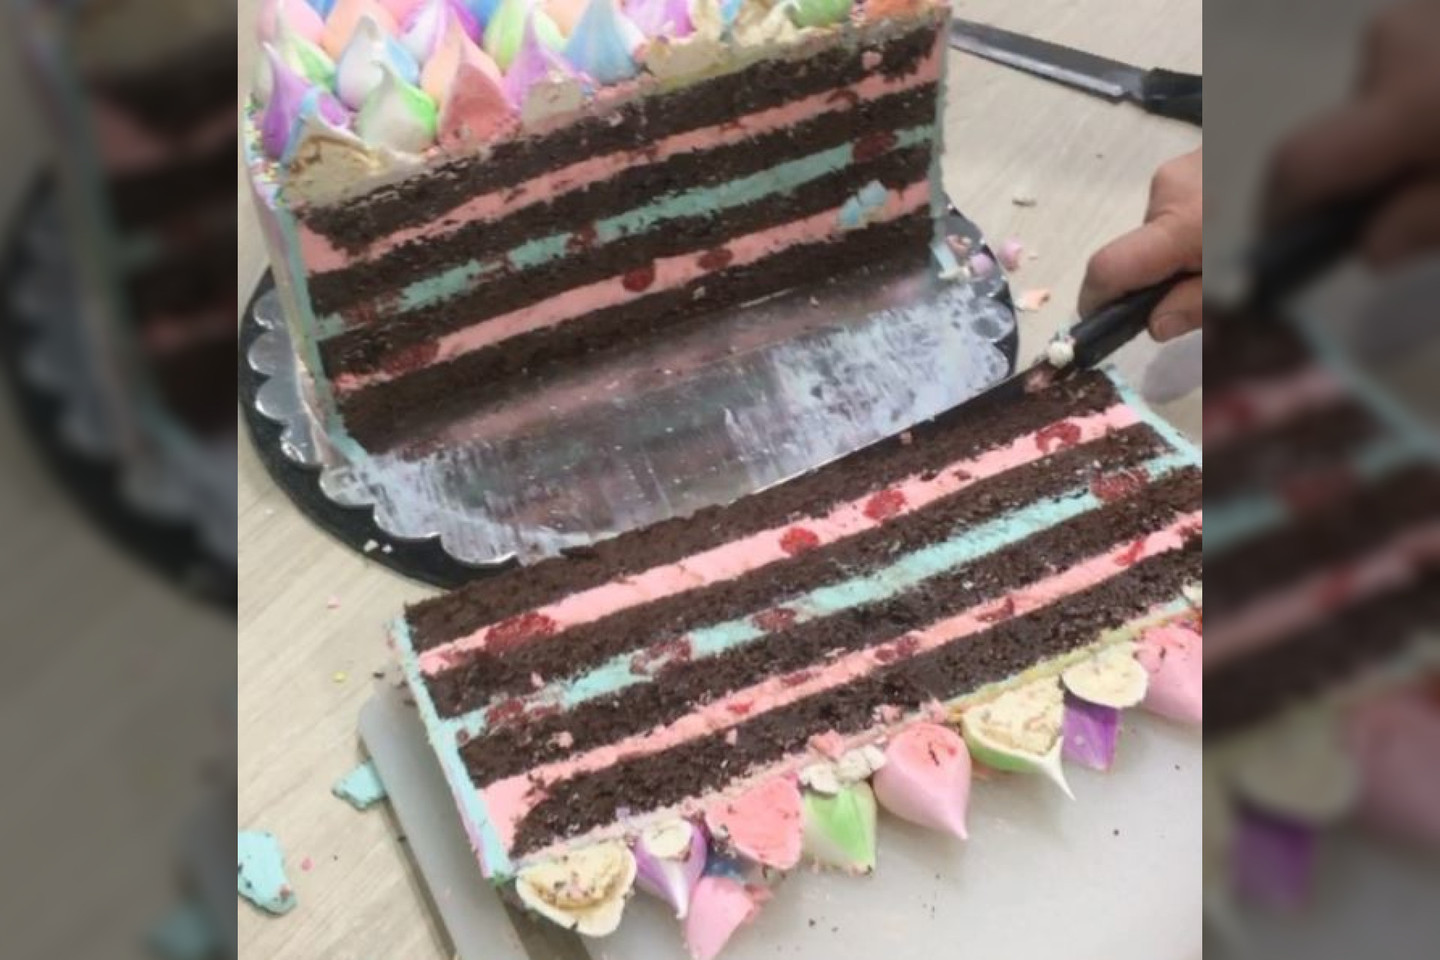  Taip pjaustant tortą jį galima padalinti didesniam būriui žmonių.<br> „Instagram“ nuotr.